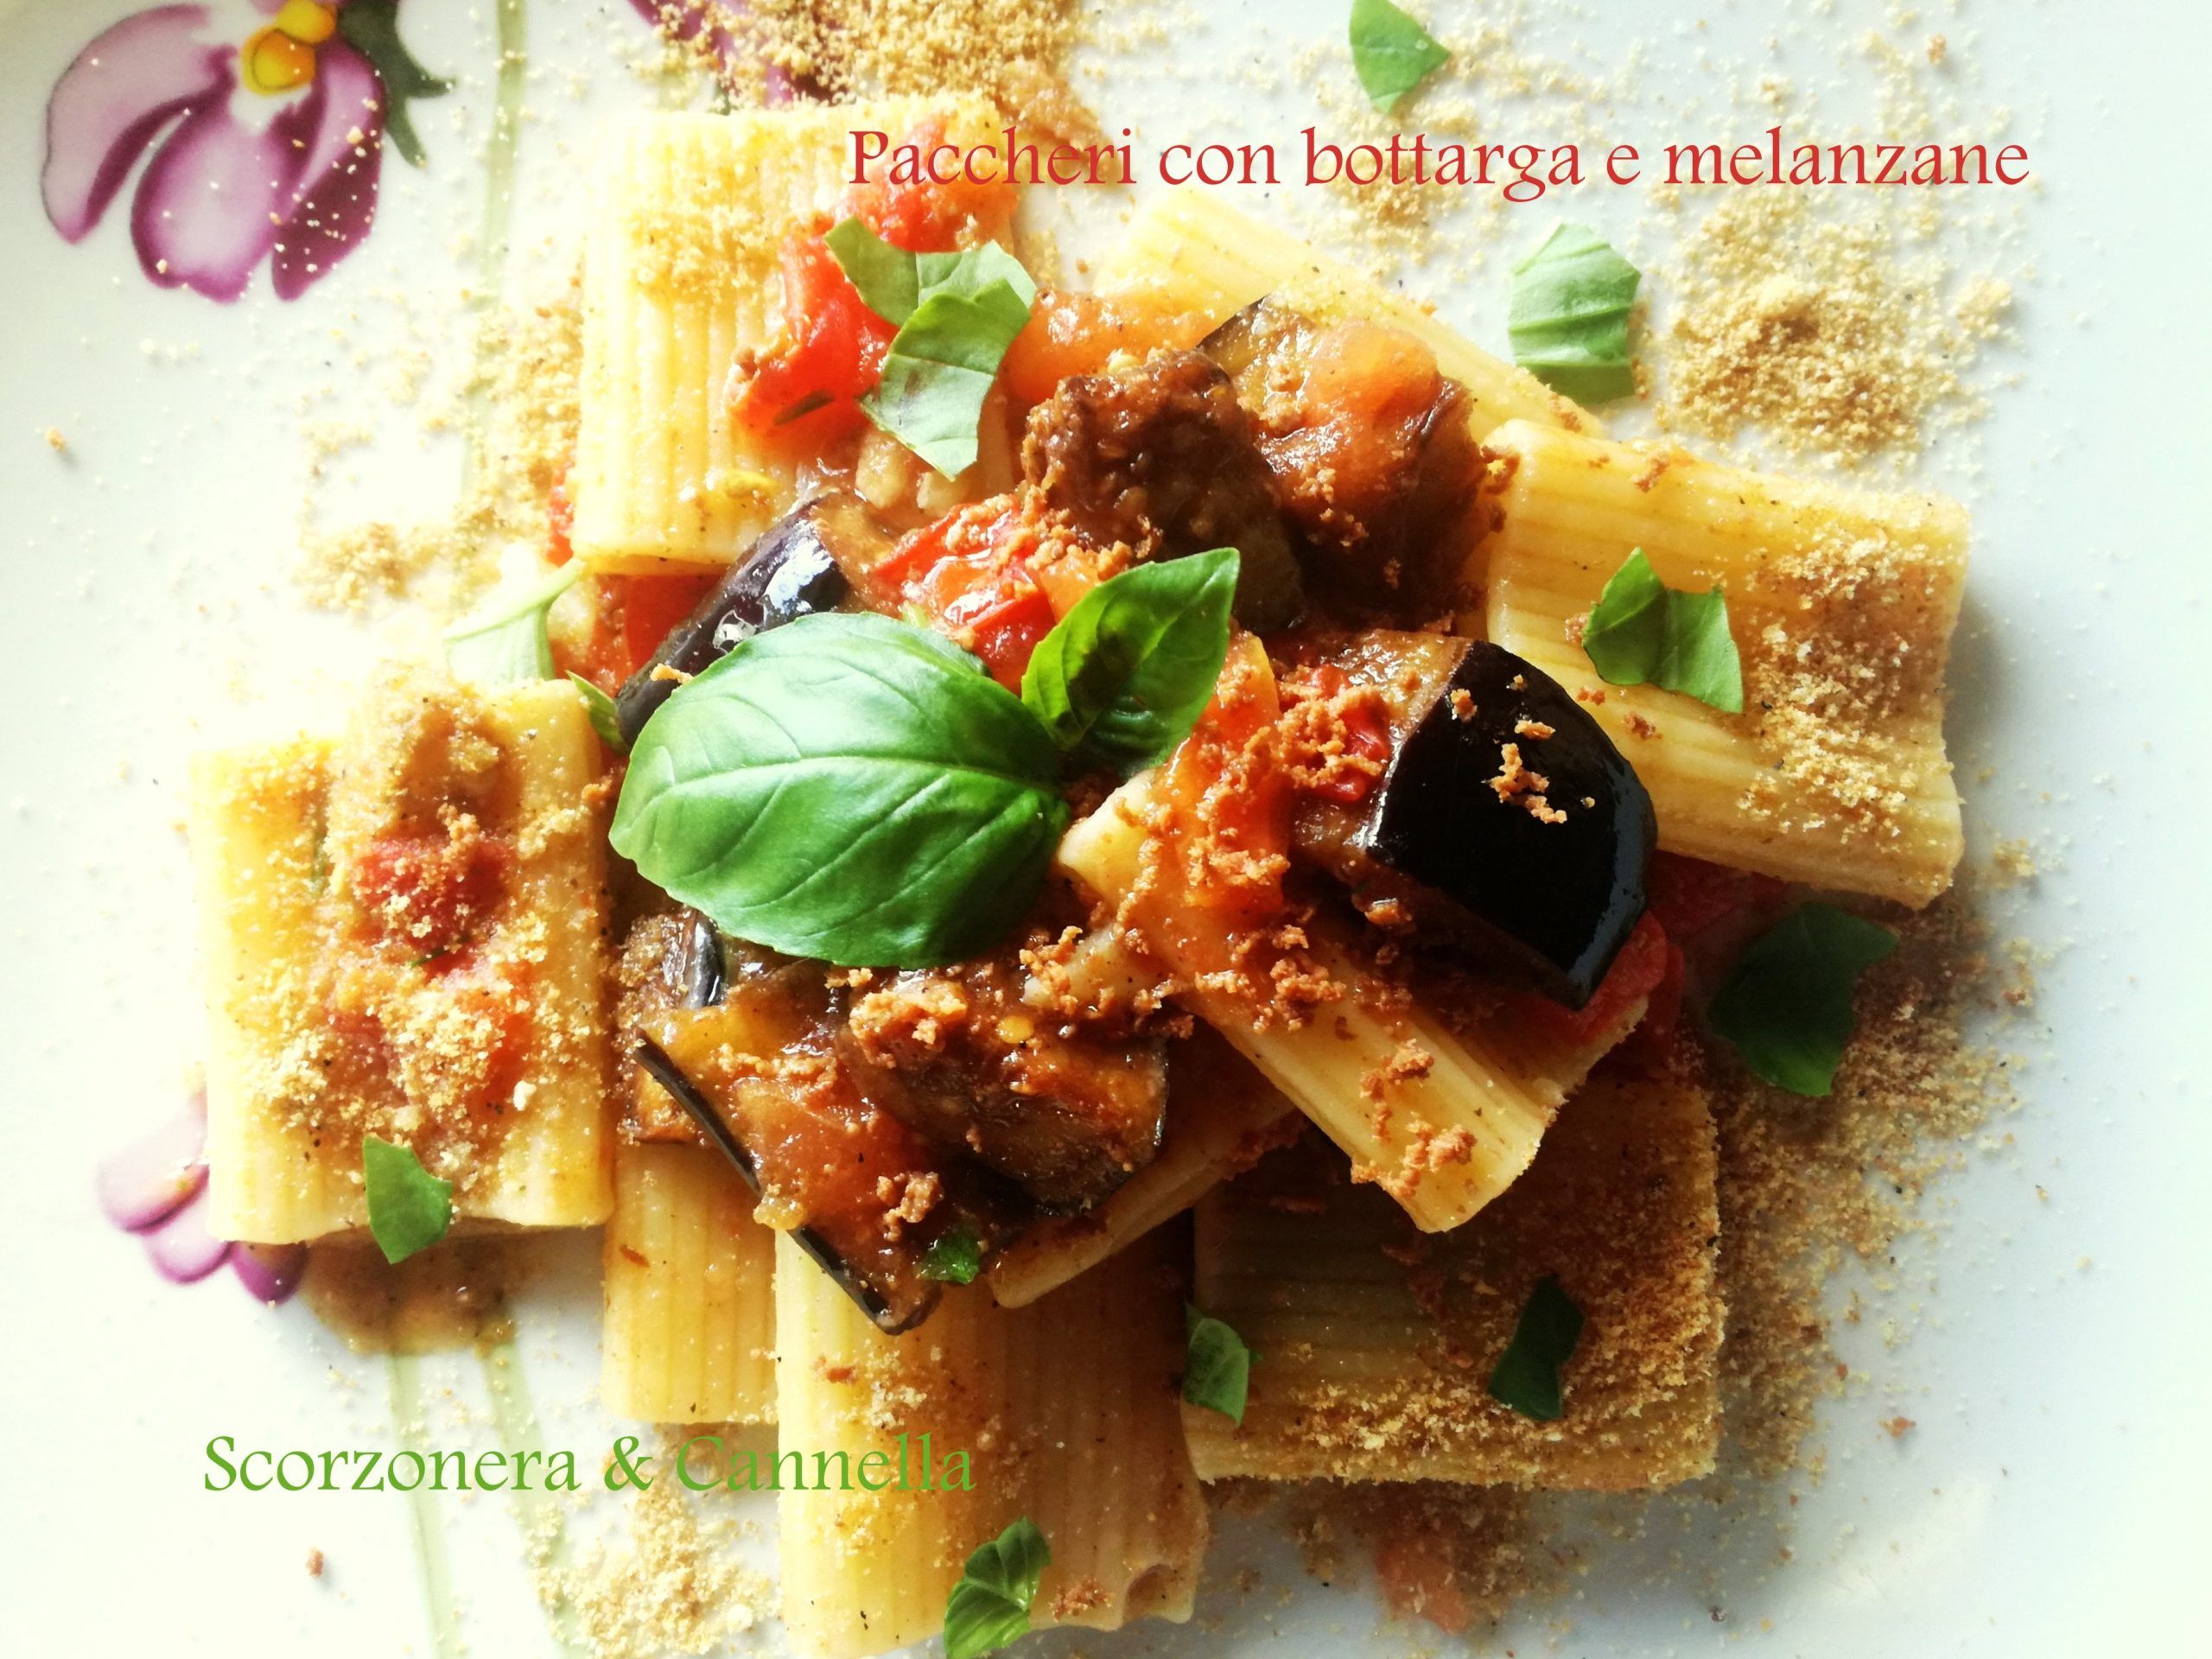 Paccheri con bottarga e melanzane di Scorzonera&Cannella